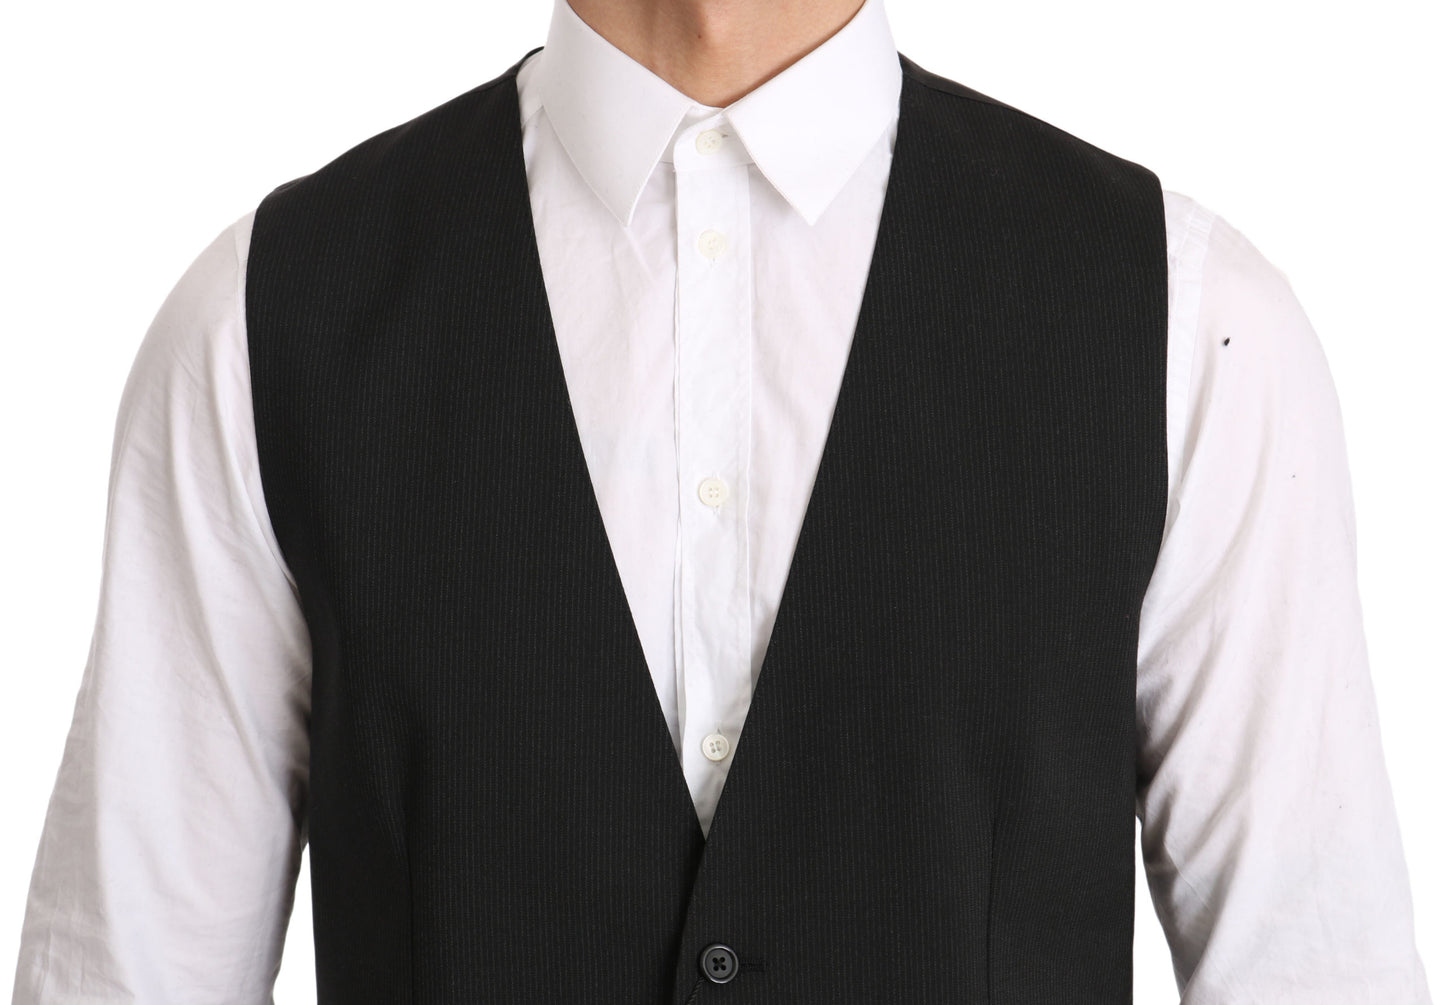 Dolce & Gabbana Gray Gilet STAFF Regular Fit Formal Vest